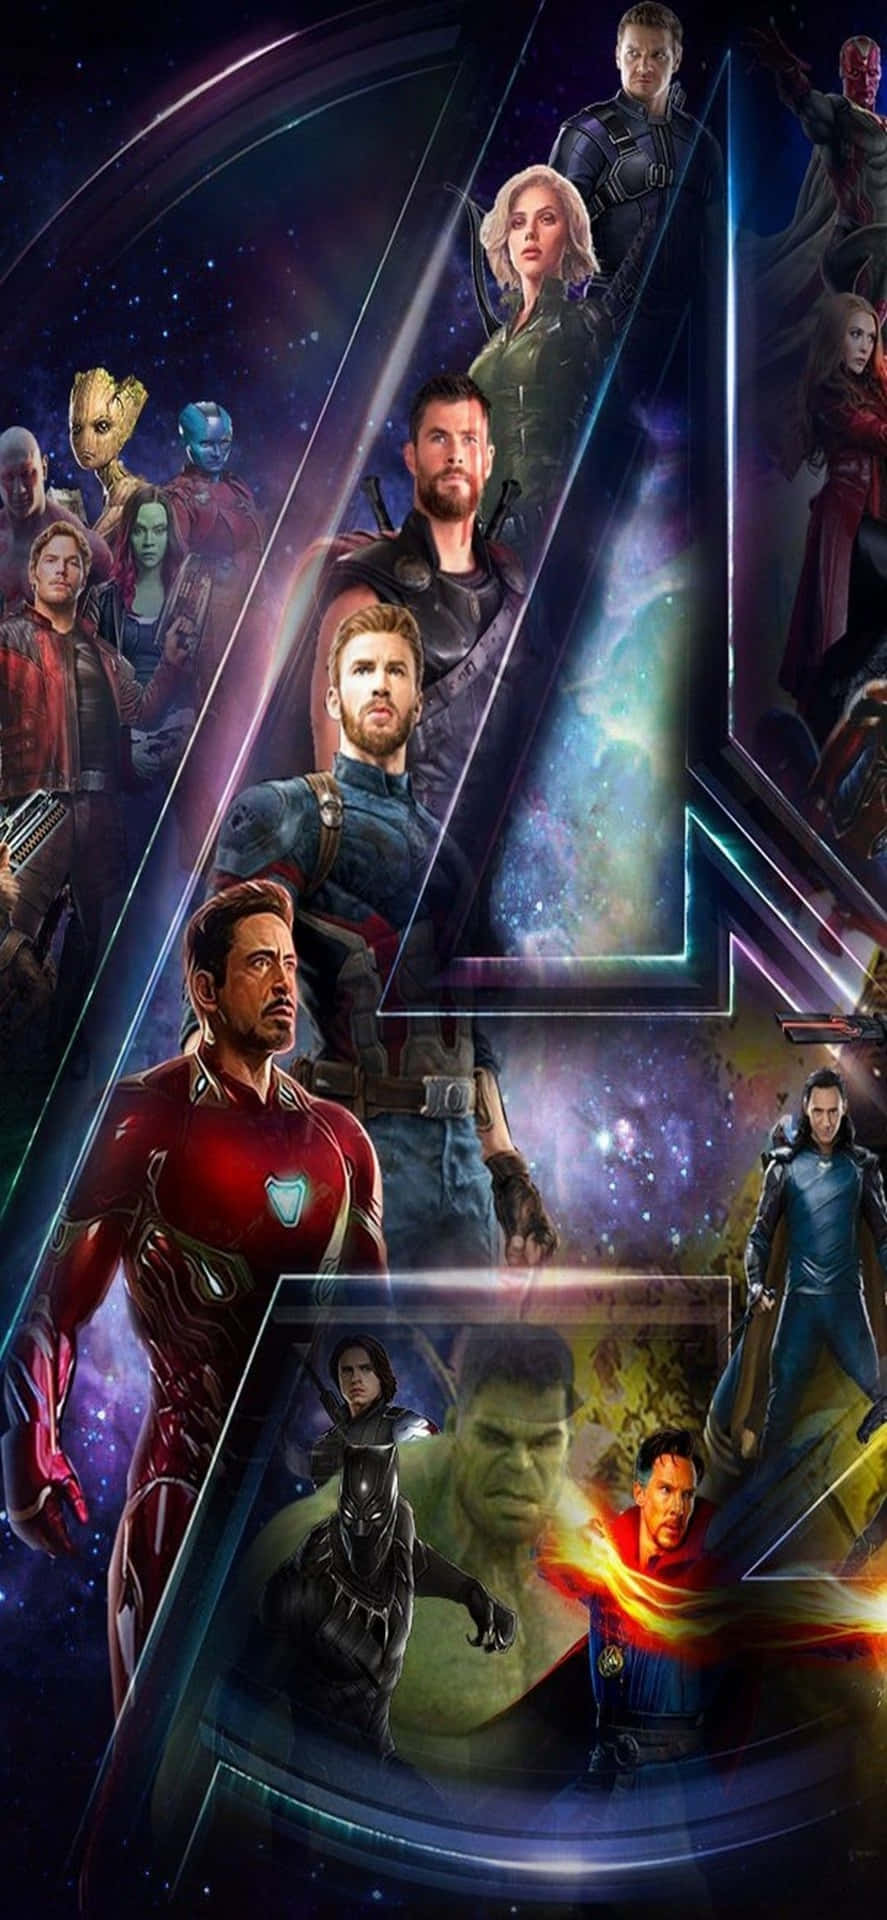 Upplevkraften Hos Avengers Med Den Helt Nya Iphone Xs:s Bakgrundsbild.